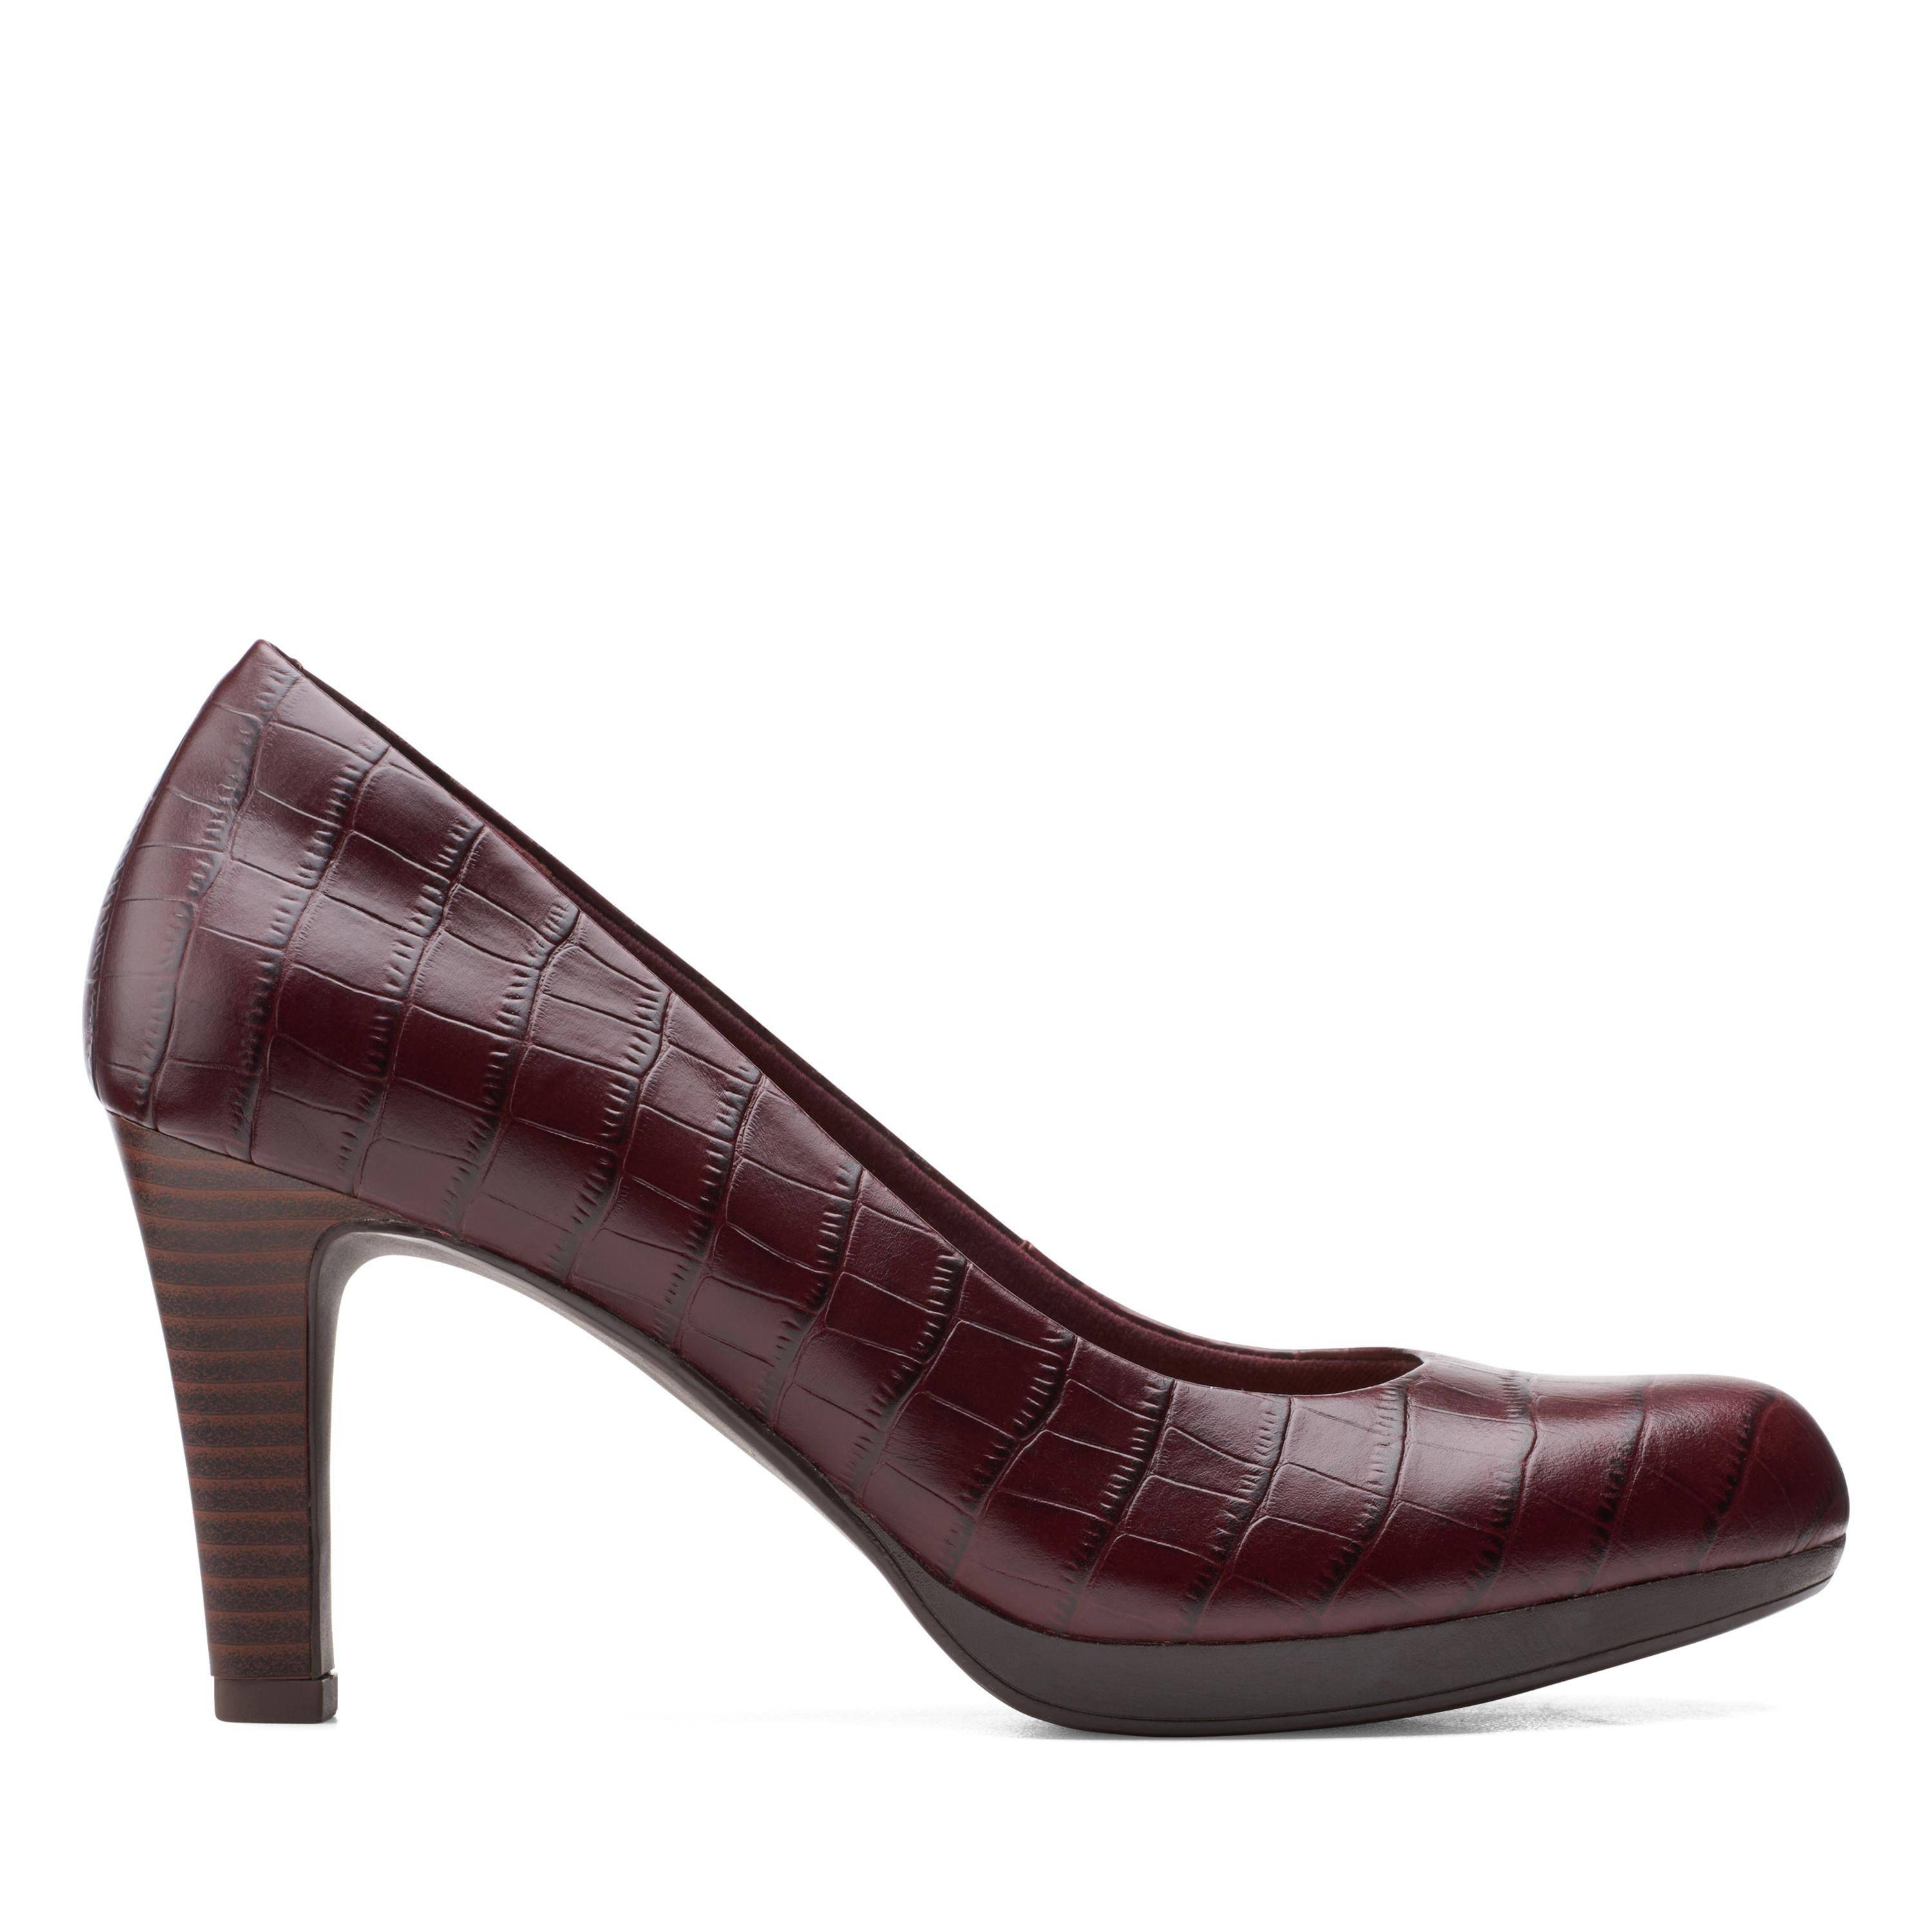 Женские туфли-лодочки Clarks(Adriel Viola 26151330), бордовые, цвет бордовый, размер 39.5 - фото 2